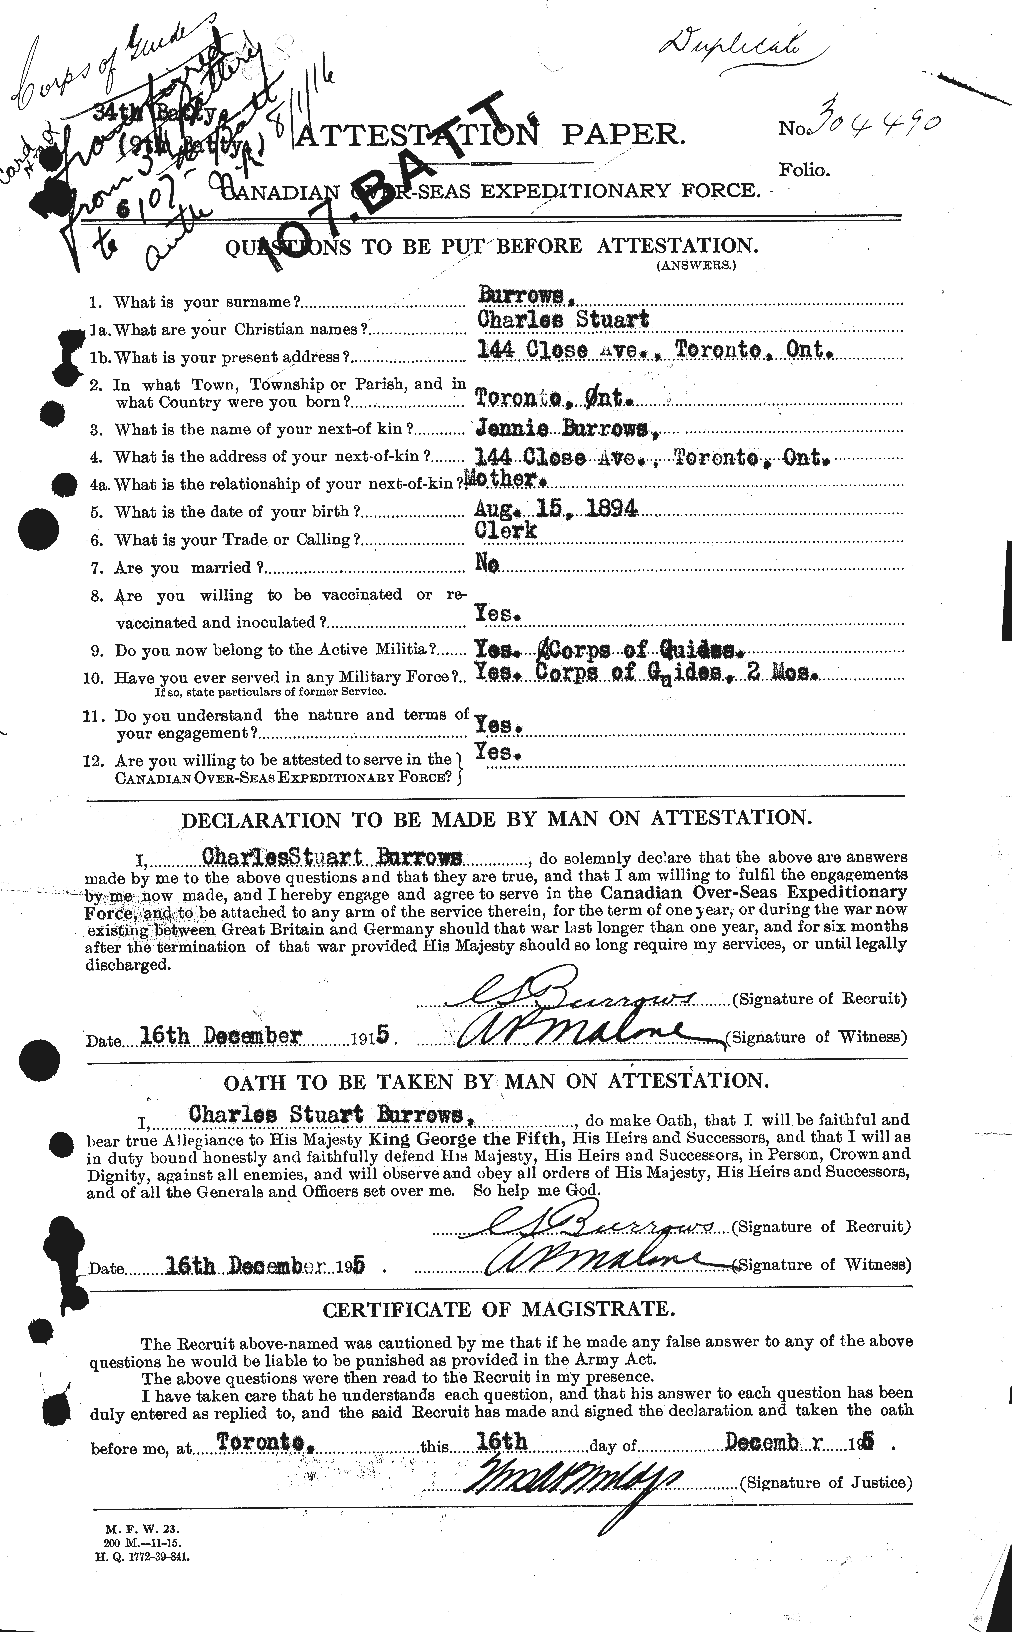 Dossiers du Personnel de la Première Guerre mondiale - CEC 274789a